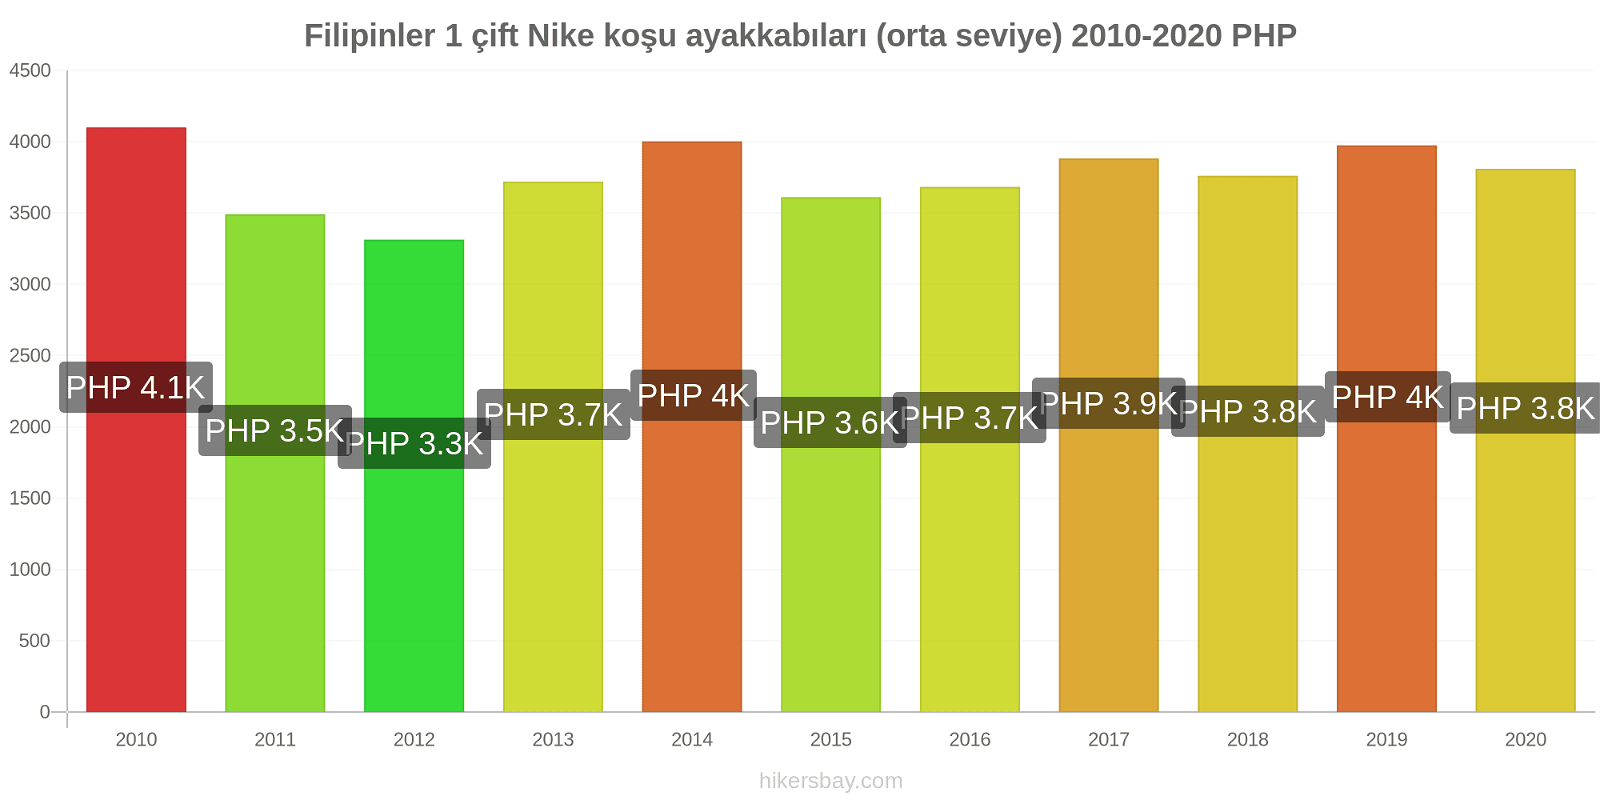 Filipinler fiyat değişiklikleri 1 çift Nike koşu ayakkabıları (orta seviye) hikersbay.com